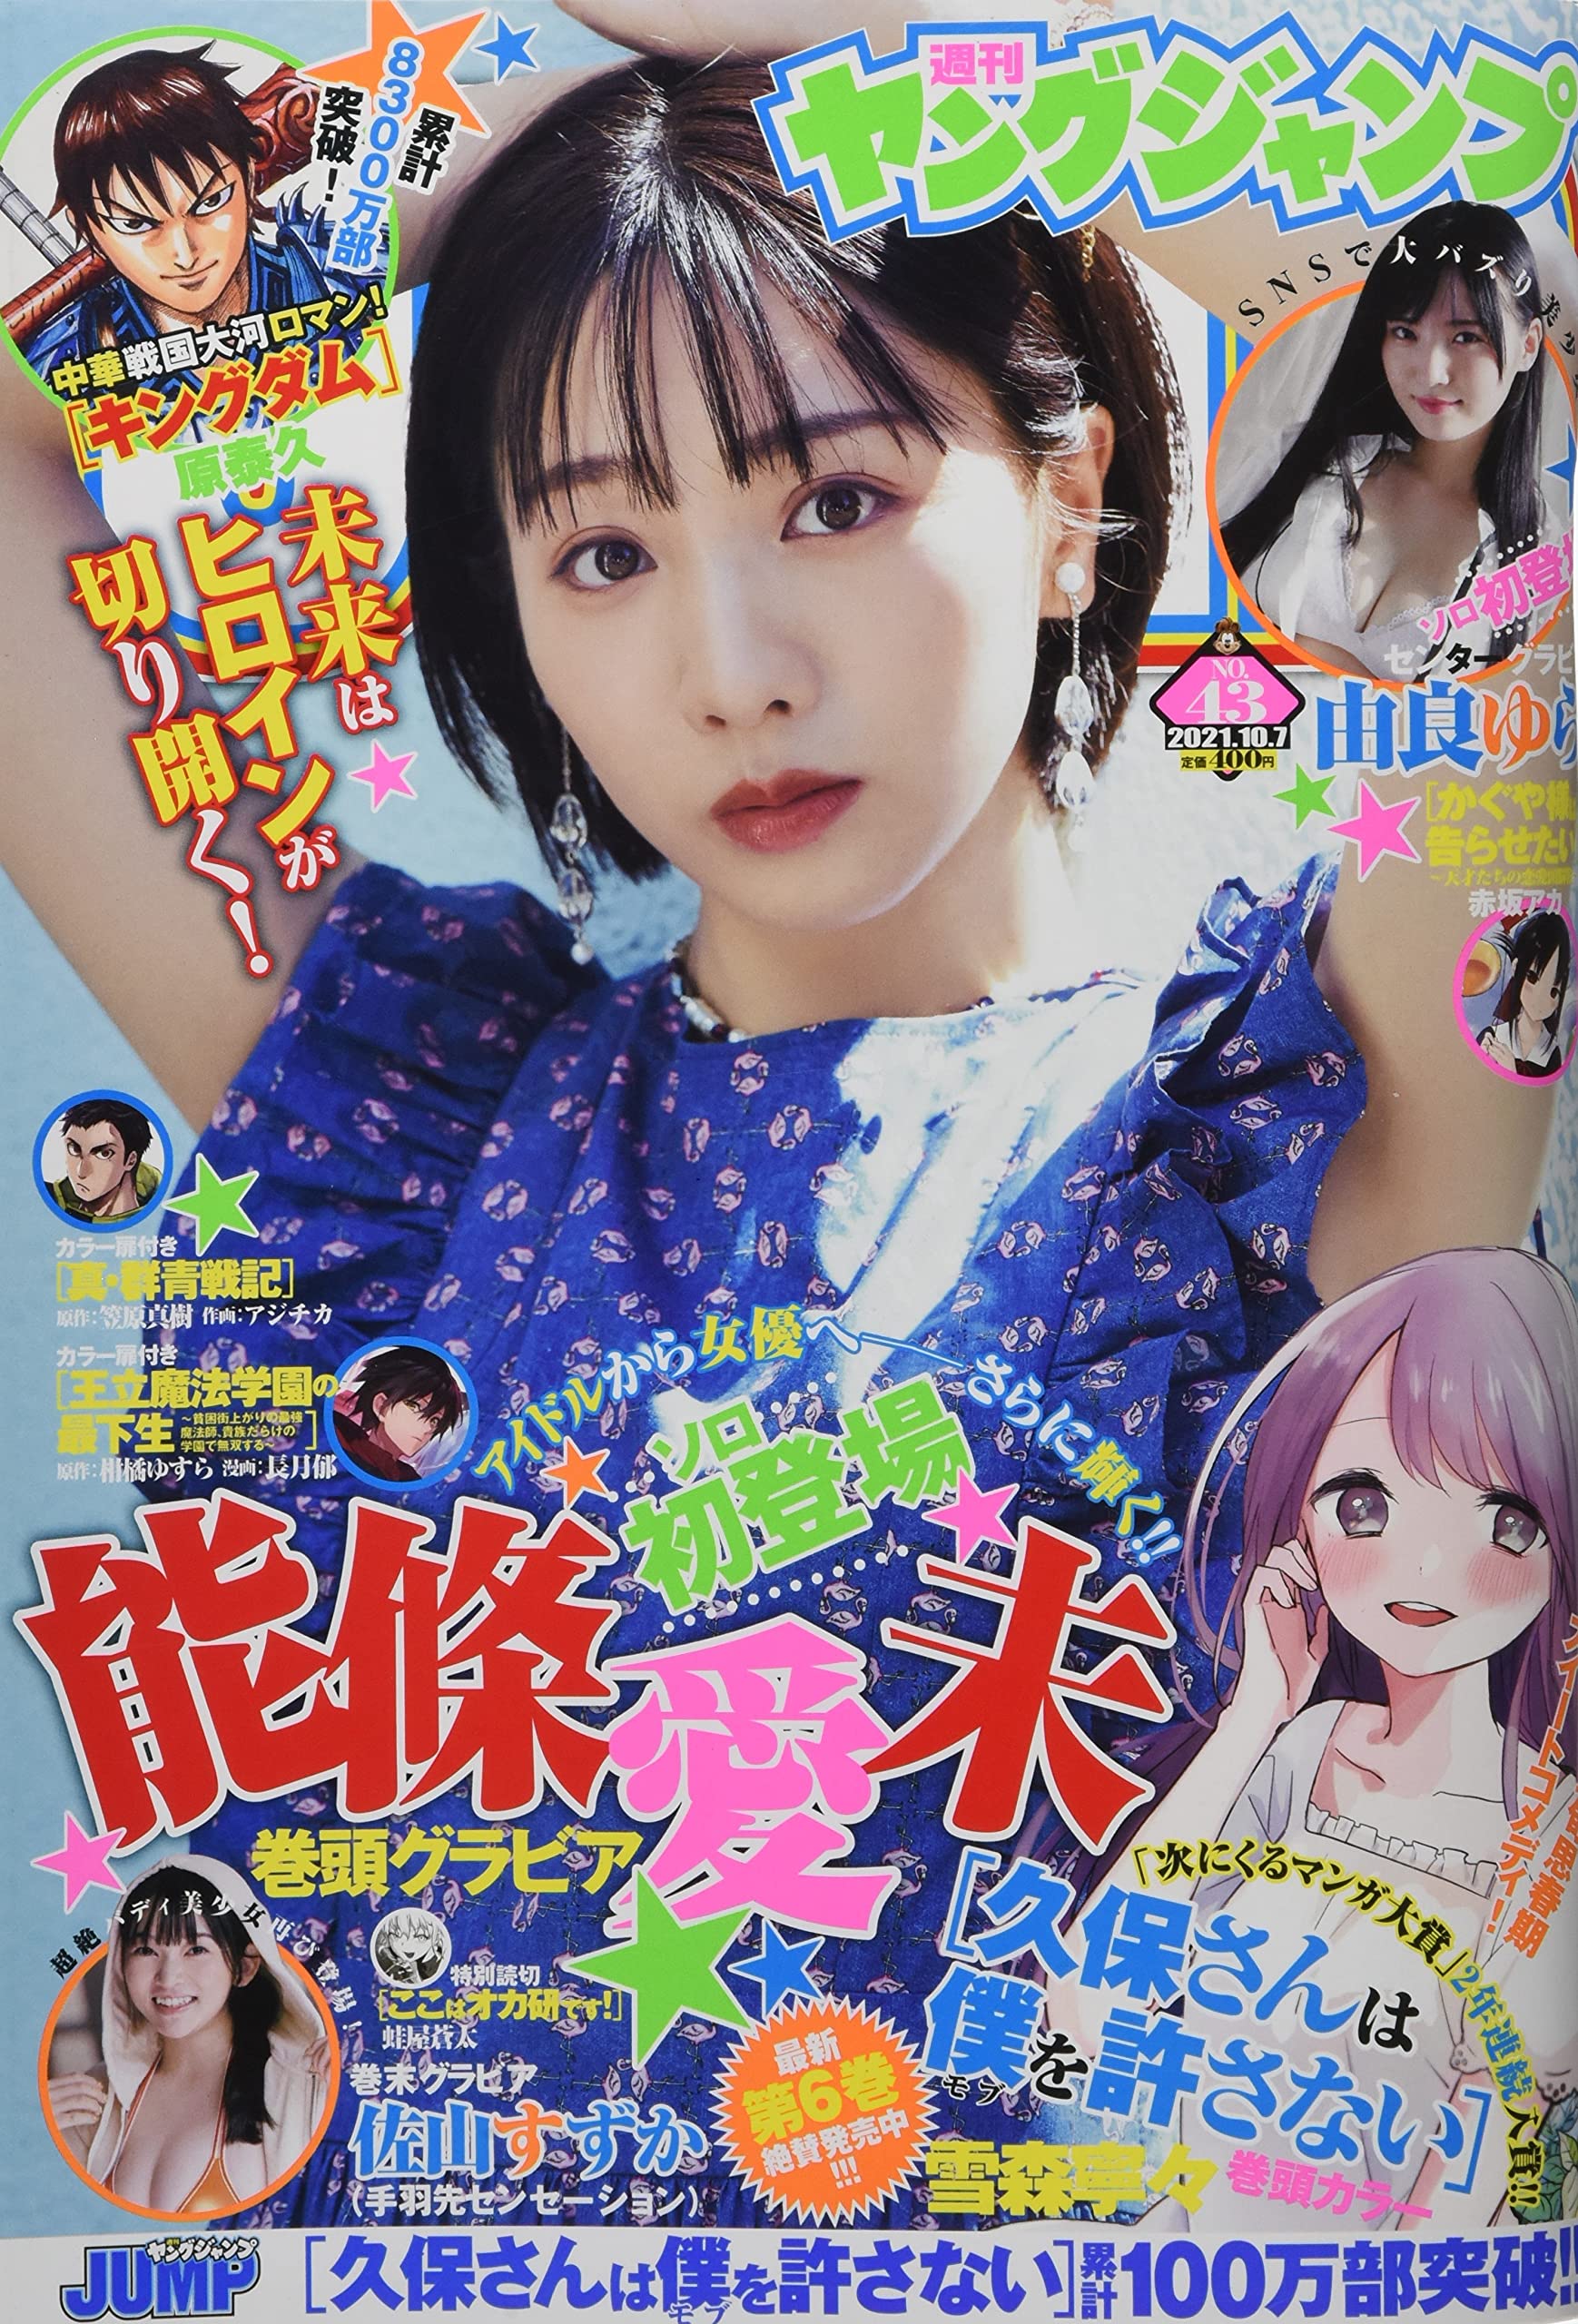  週刊ヤングジャンプ 2021年10月7日号 (No.43) 雑誌